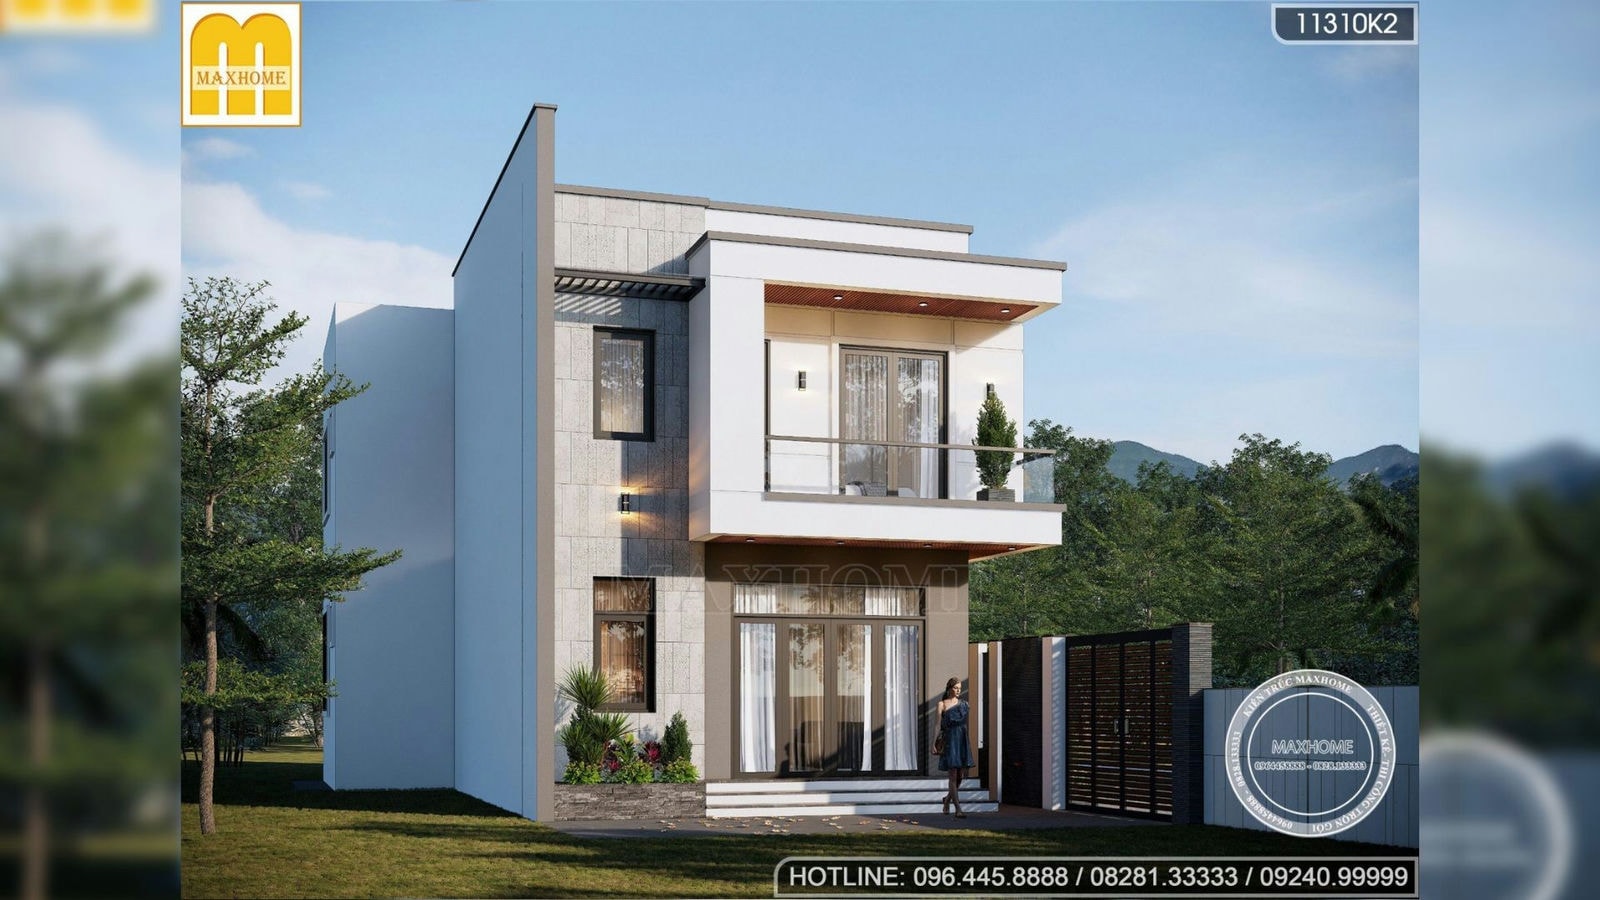 Thiết kế nhà hiện đại 2 tầng đẹp sang trọng tối ưu công năng | MH02635